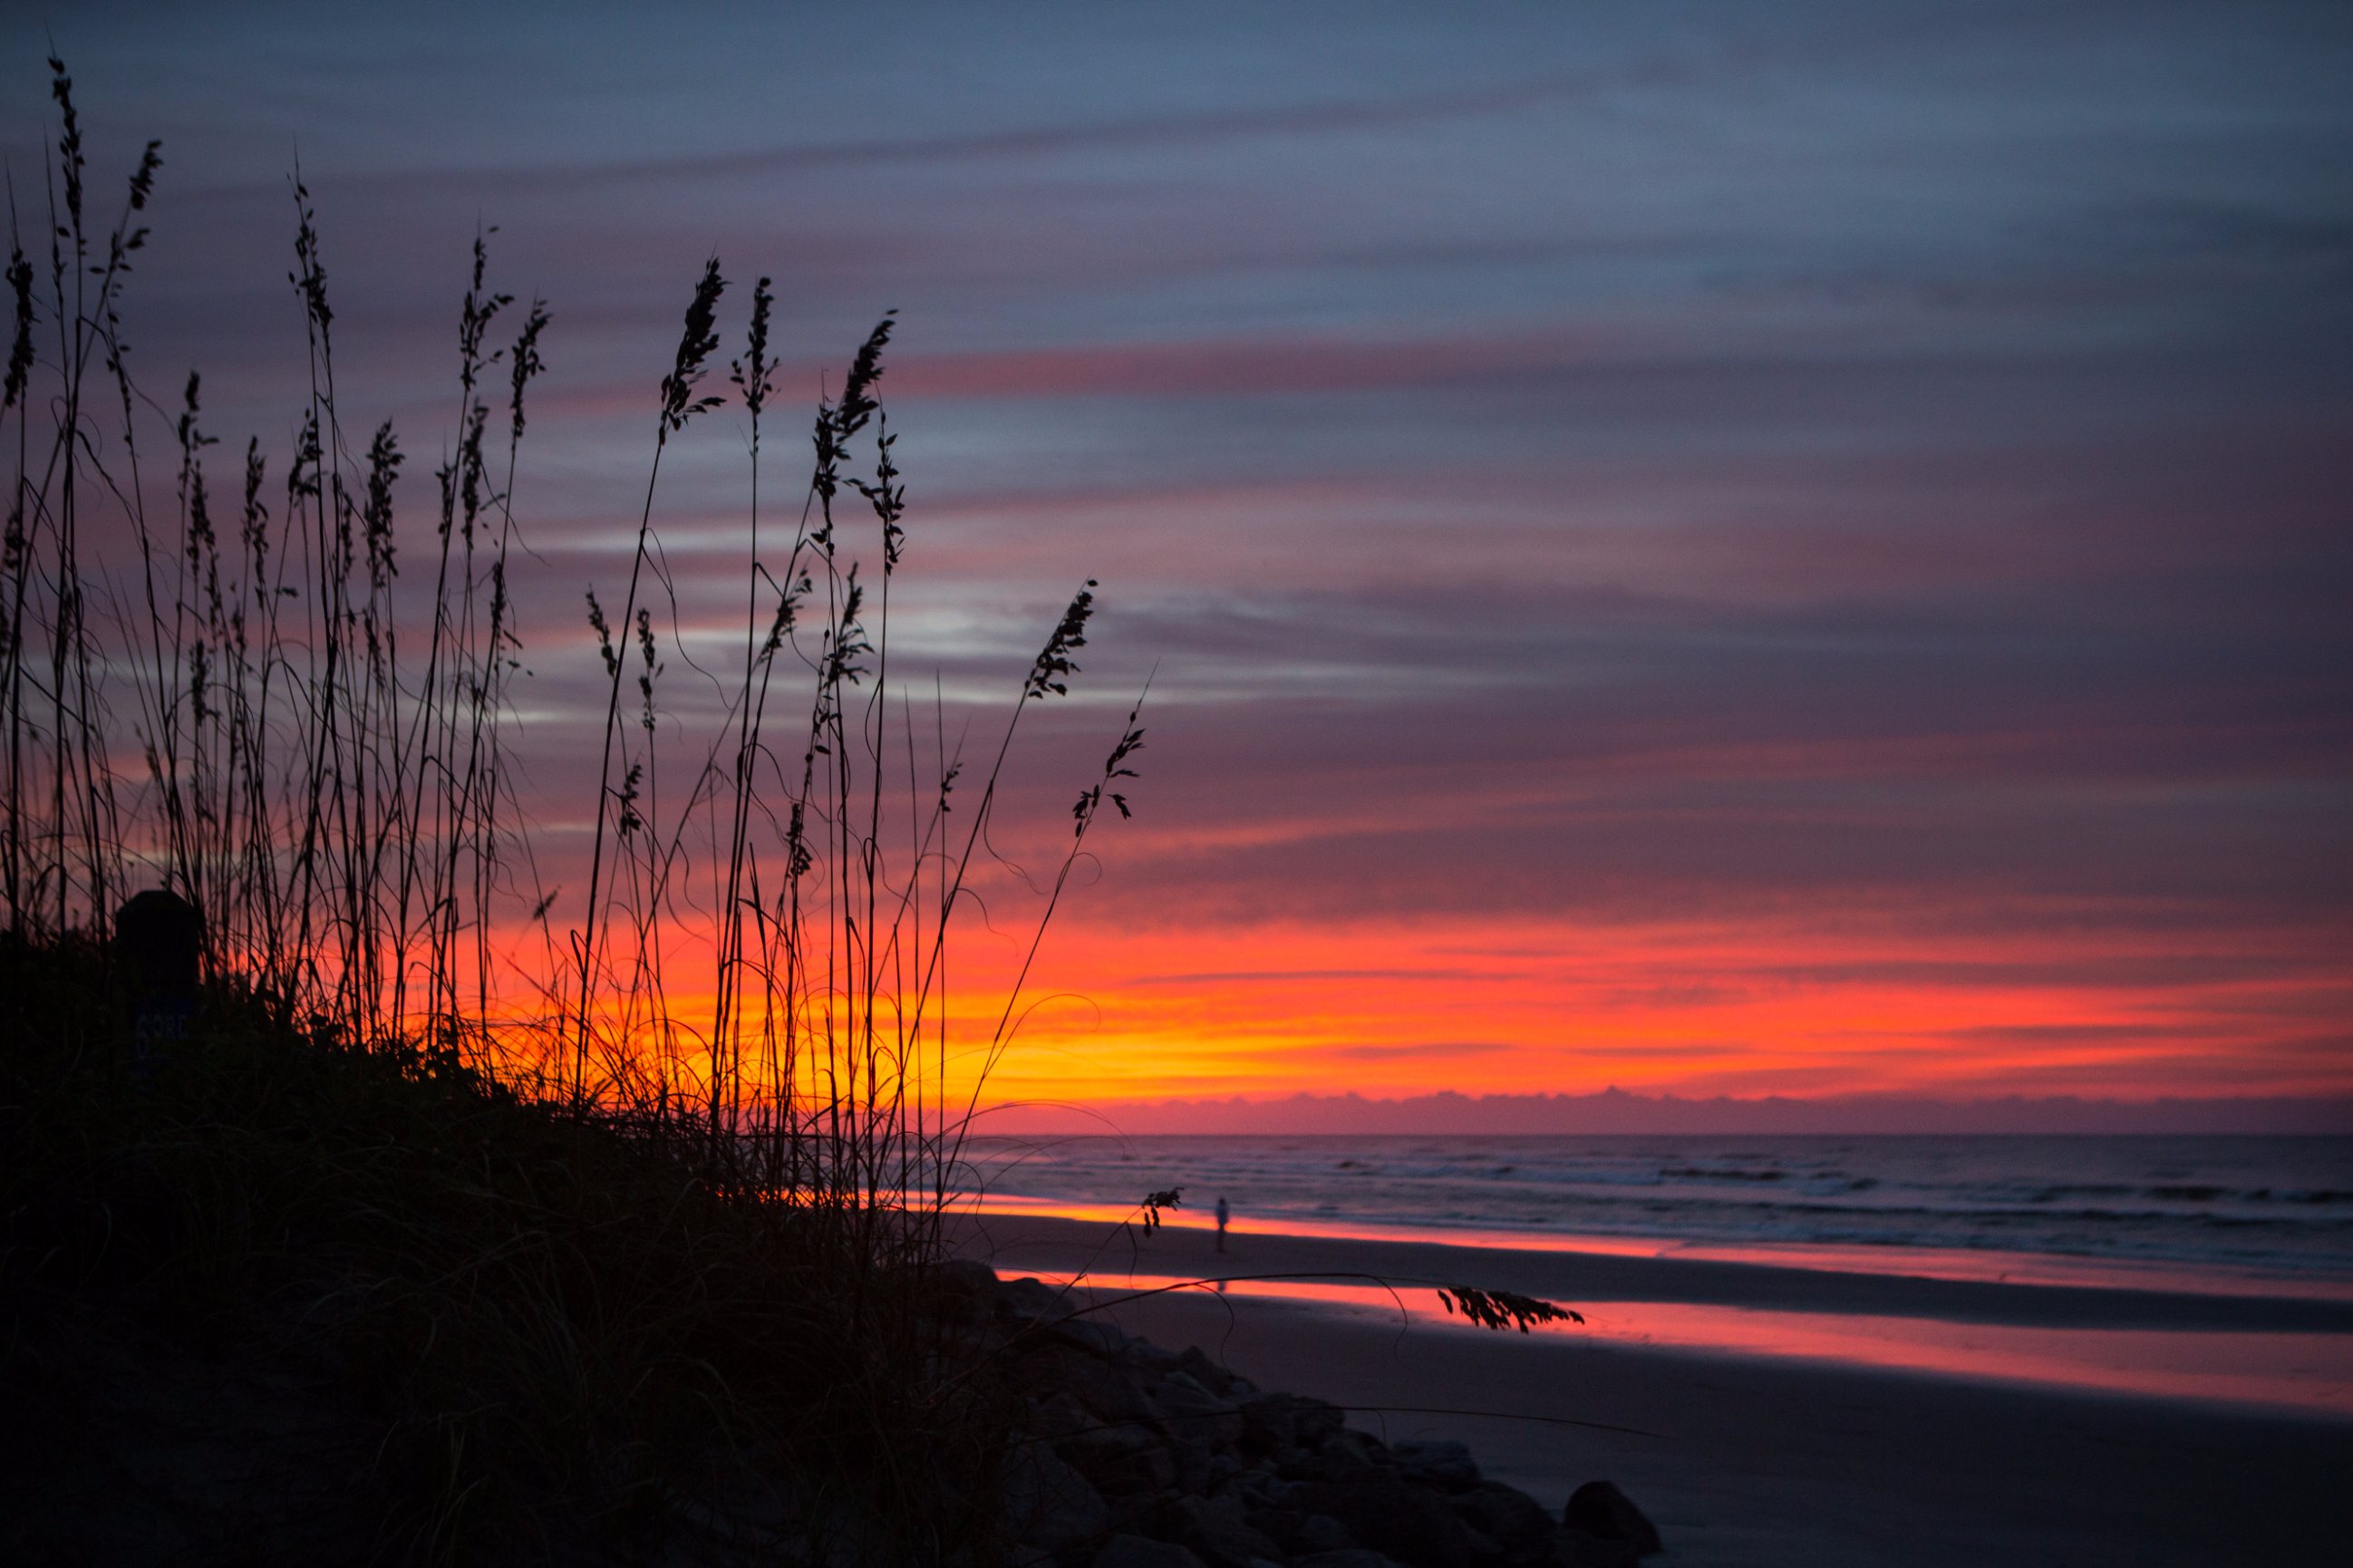 Myrtle beach sunrise